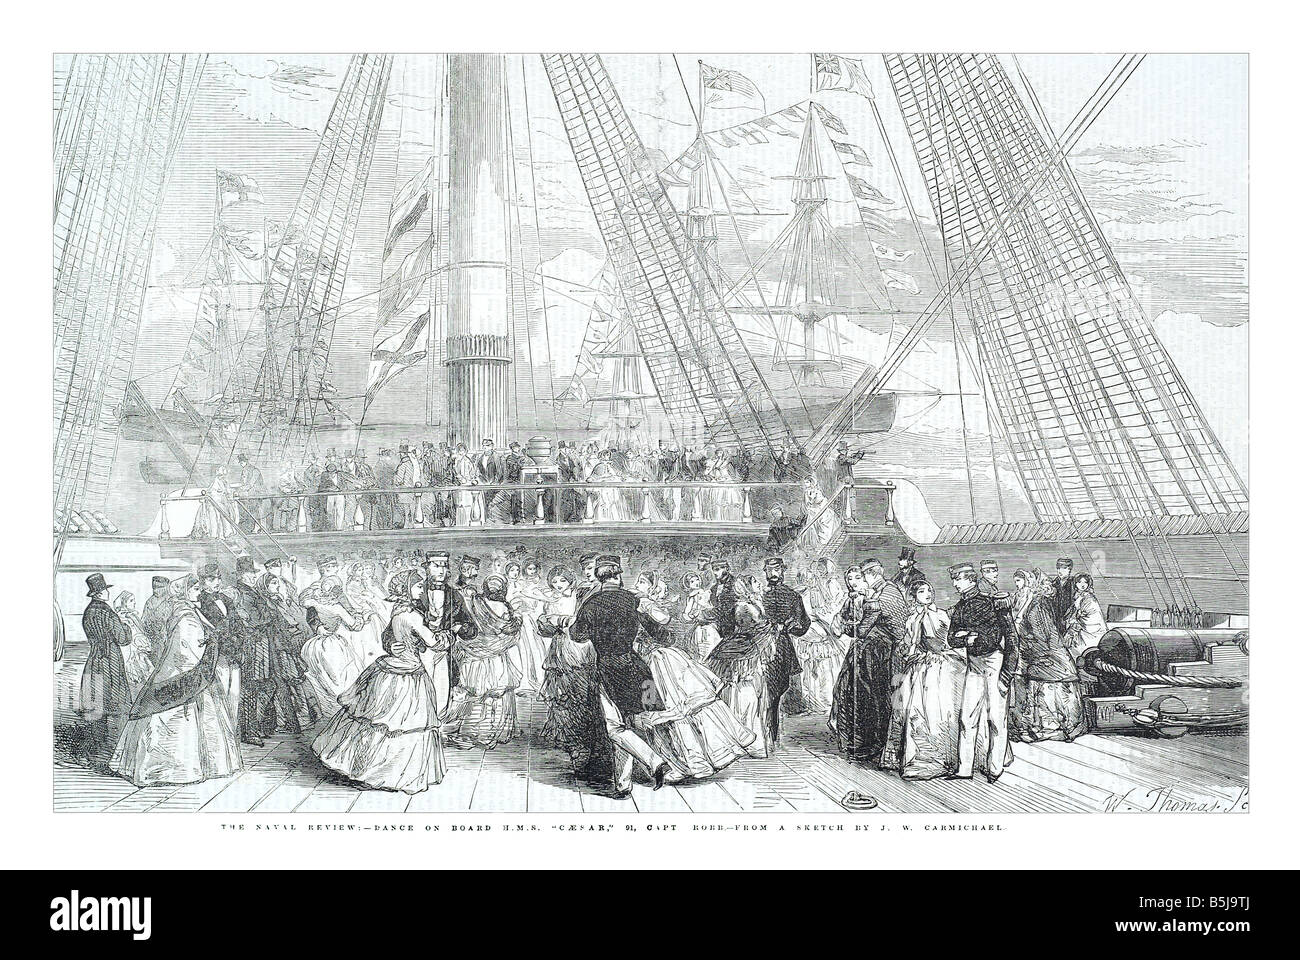 Die Flottenparade tanzen an Bord H M S Caesar 91 Capt Robb aus einer Skizze von J W Carmichael 3. Mai 1856 die Illustrated London News Stockfoto